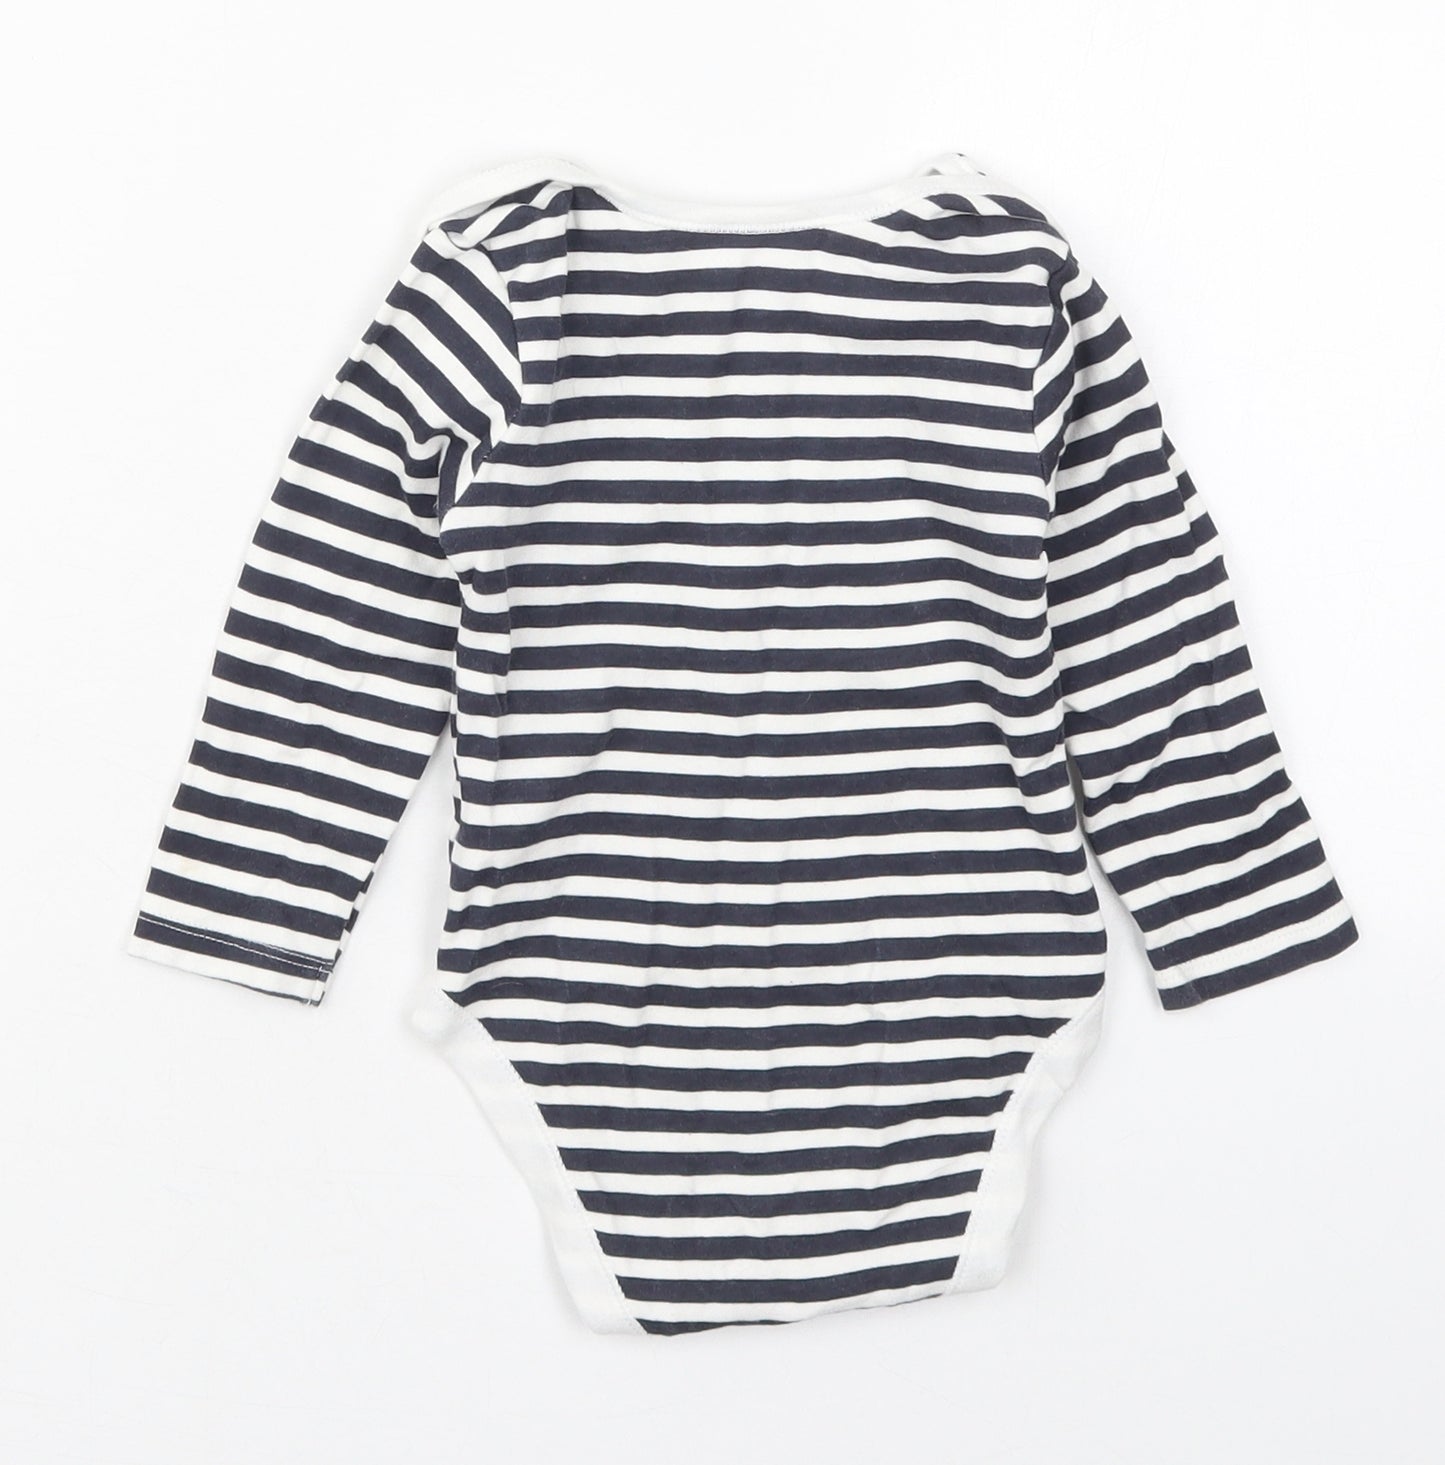 Primark Baby Blue Striped Cotton Babygrow One-Piece Size 12-18 Months  Button